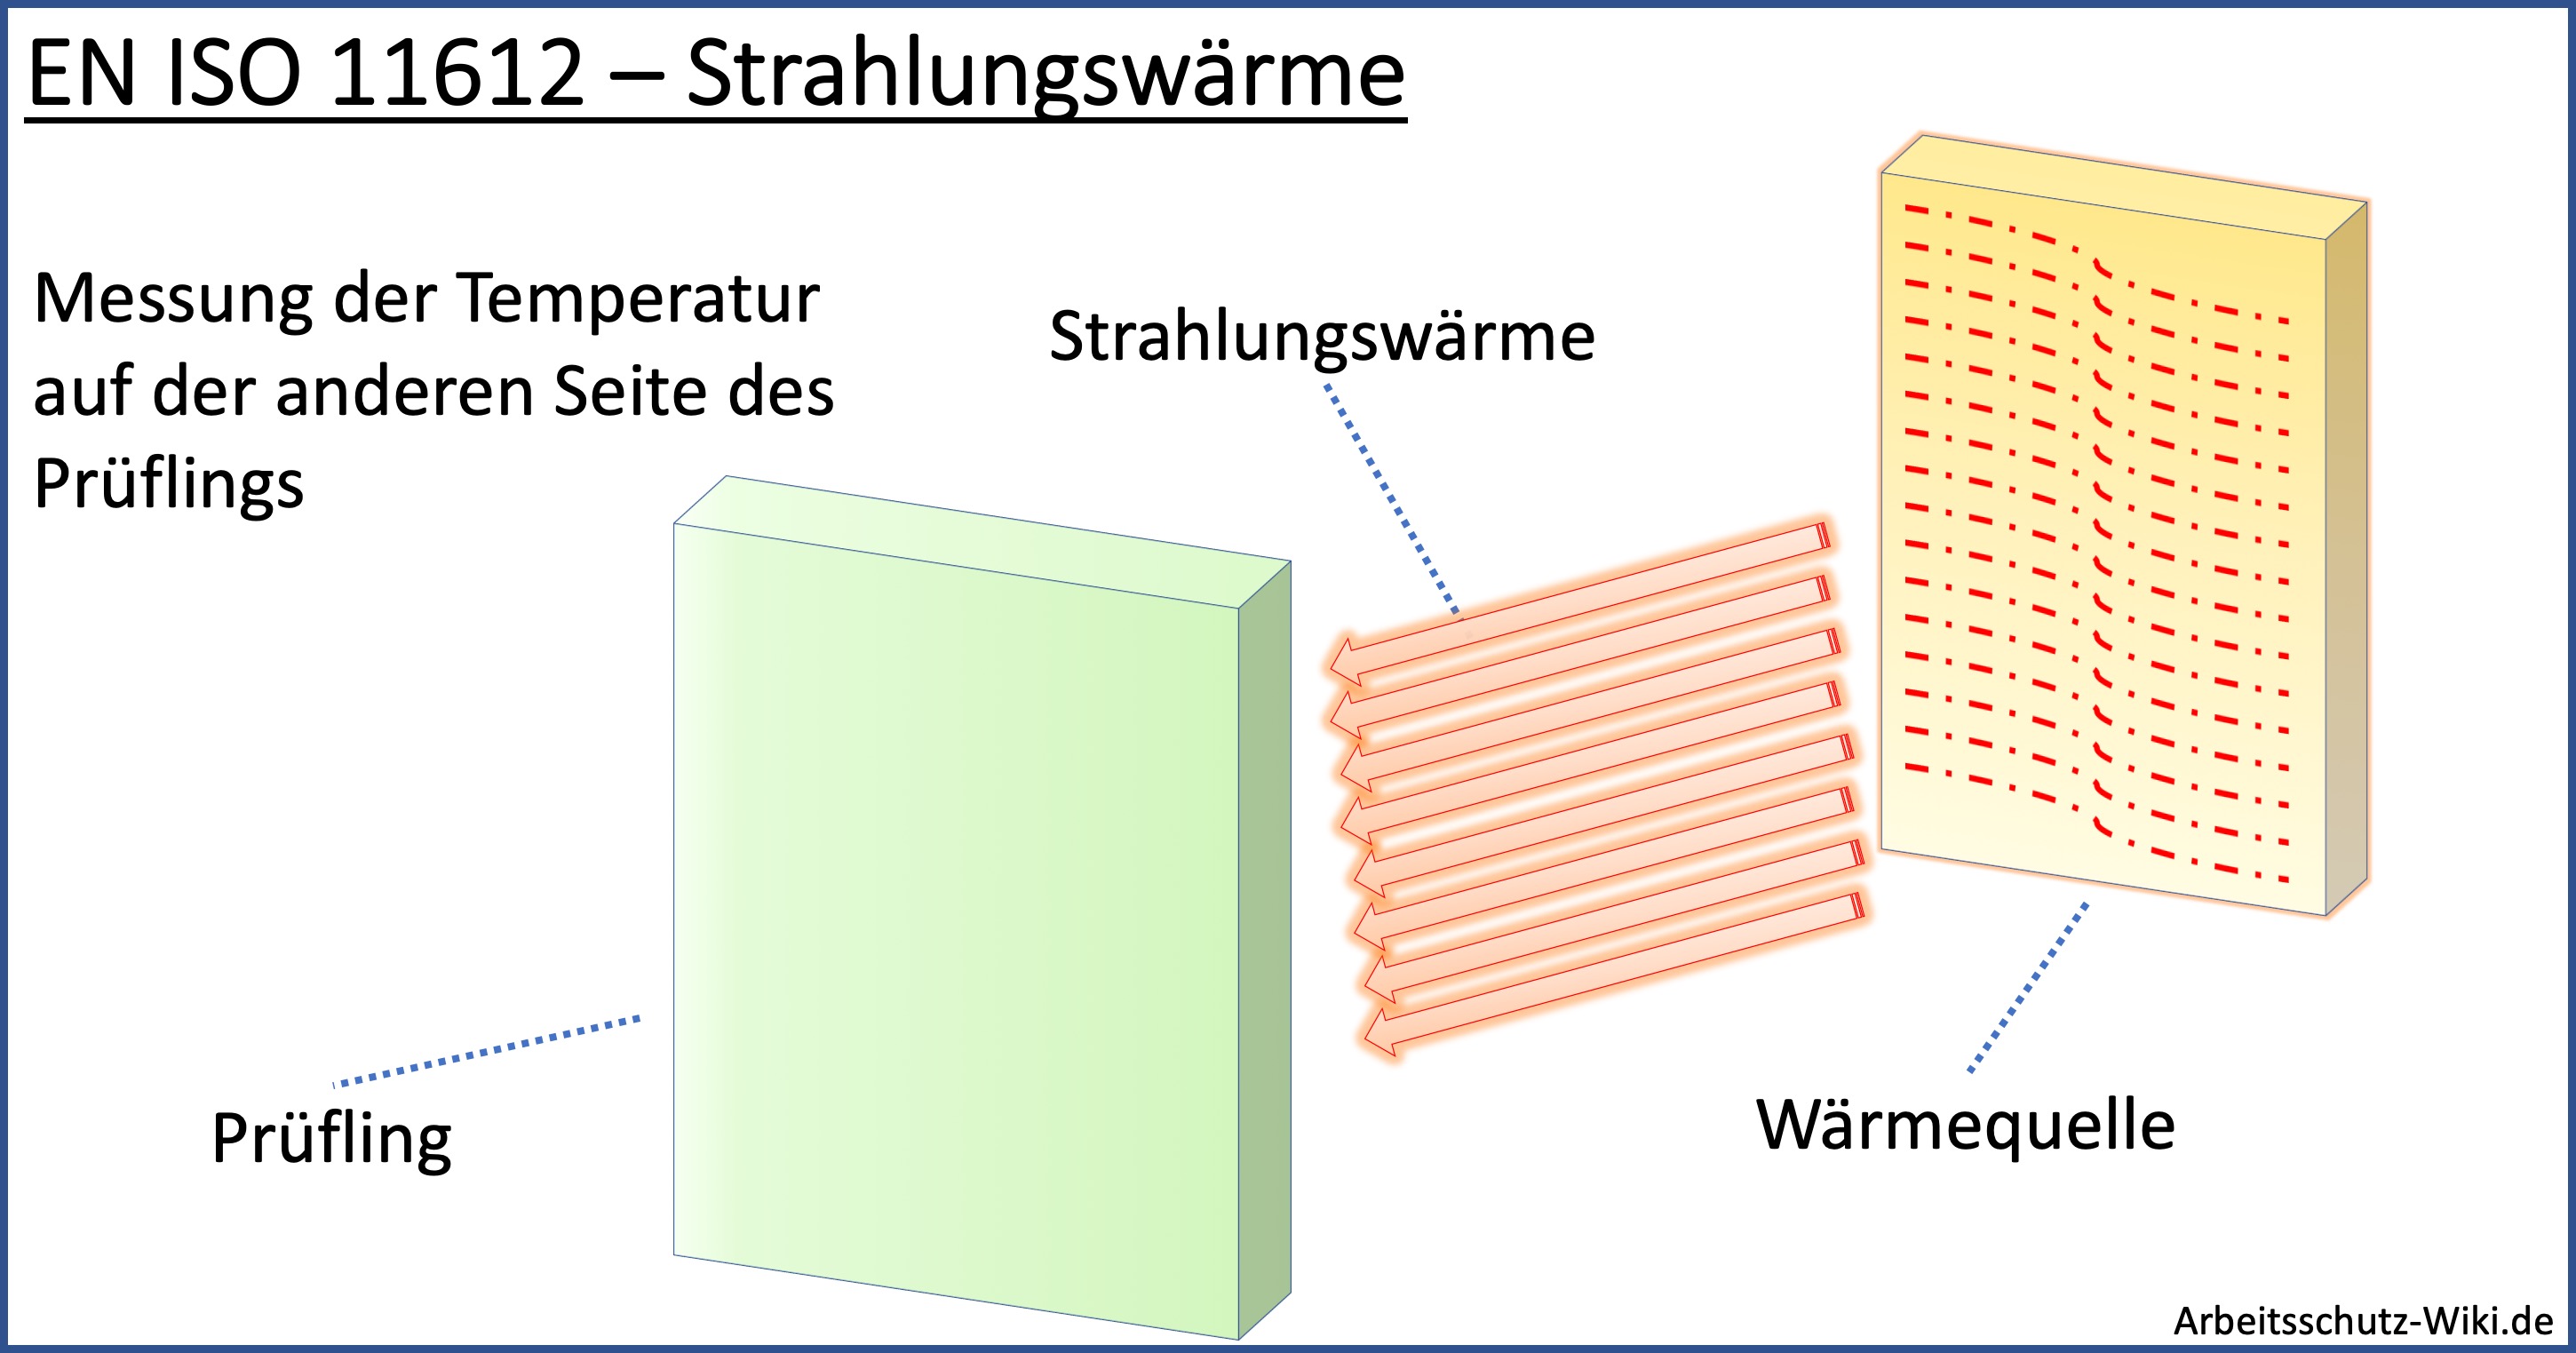 EN ISO 11612 - Strahlungswärme - Die Darstellung zeigt eine Wärmequelle, die die Strahlungswärme in Richtung eines textilen Prüflings abgibt. Auf der Anderen Seite des Materials wird die Zeitspanne ermittelt bis eine definierte Temperatur erreicht worden ist. Dies ist eine Prüfverfahren im Rahmen der Hitze- und Flammschutz Norm.